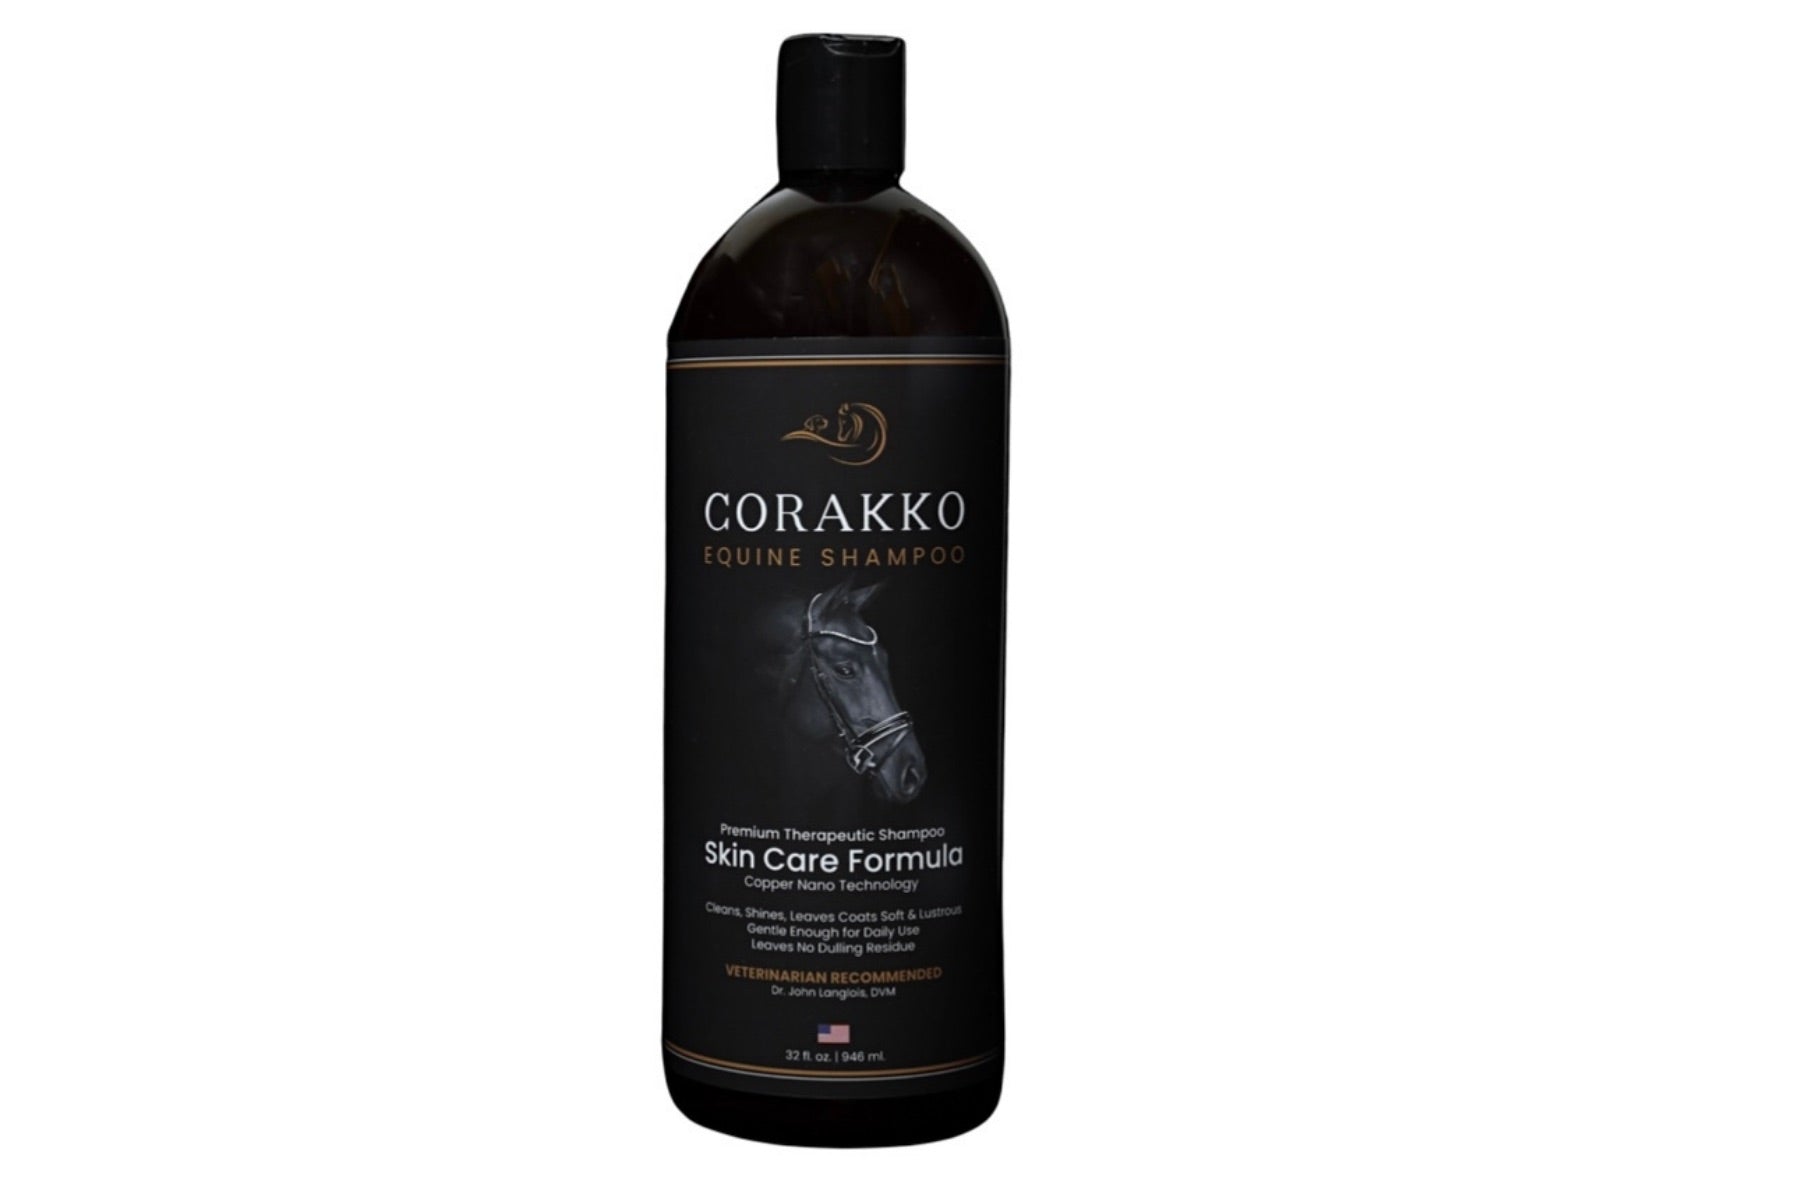 Corakko Equine & Canine Shampoo